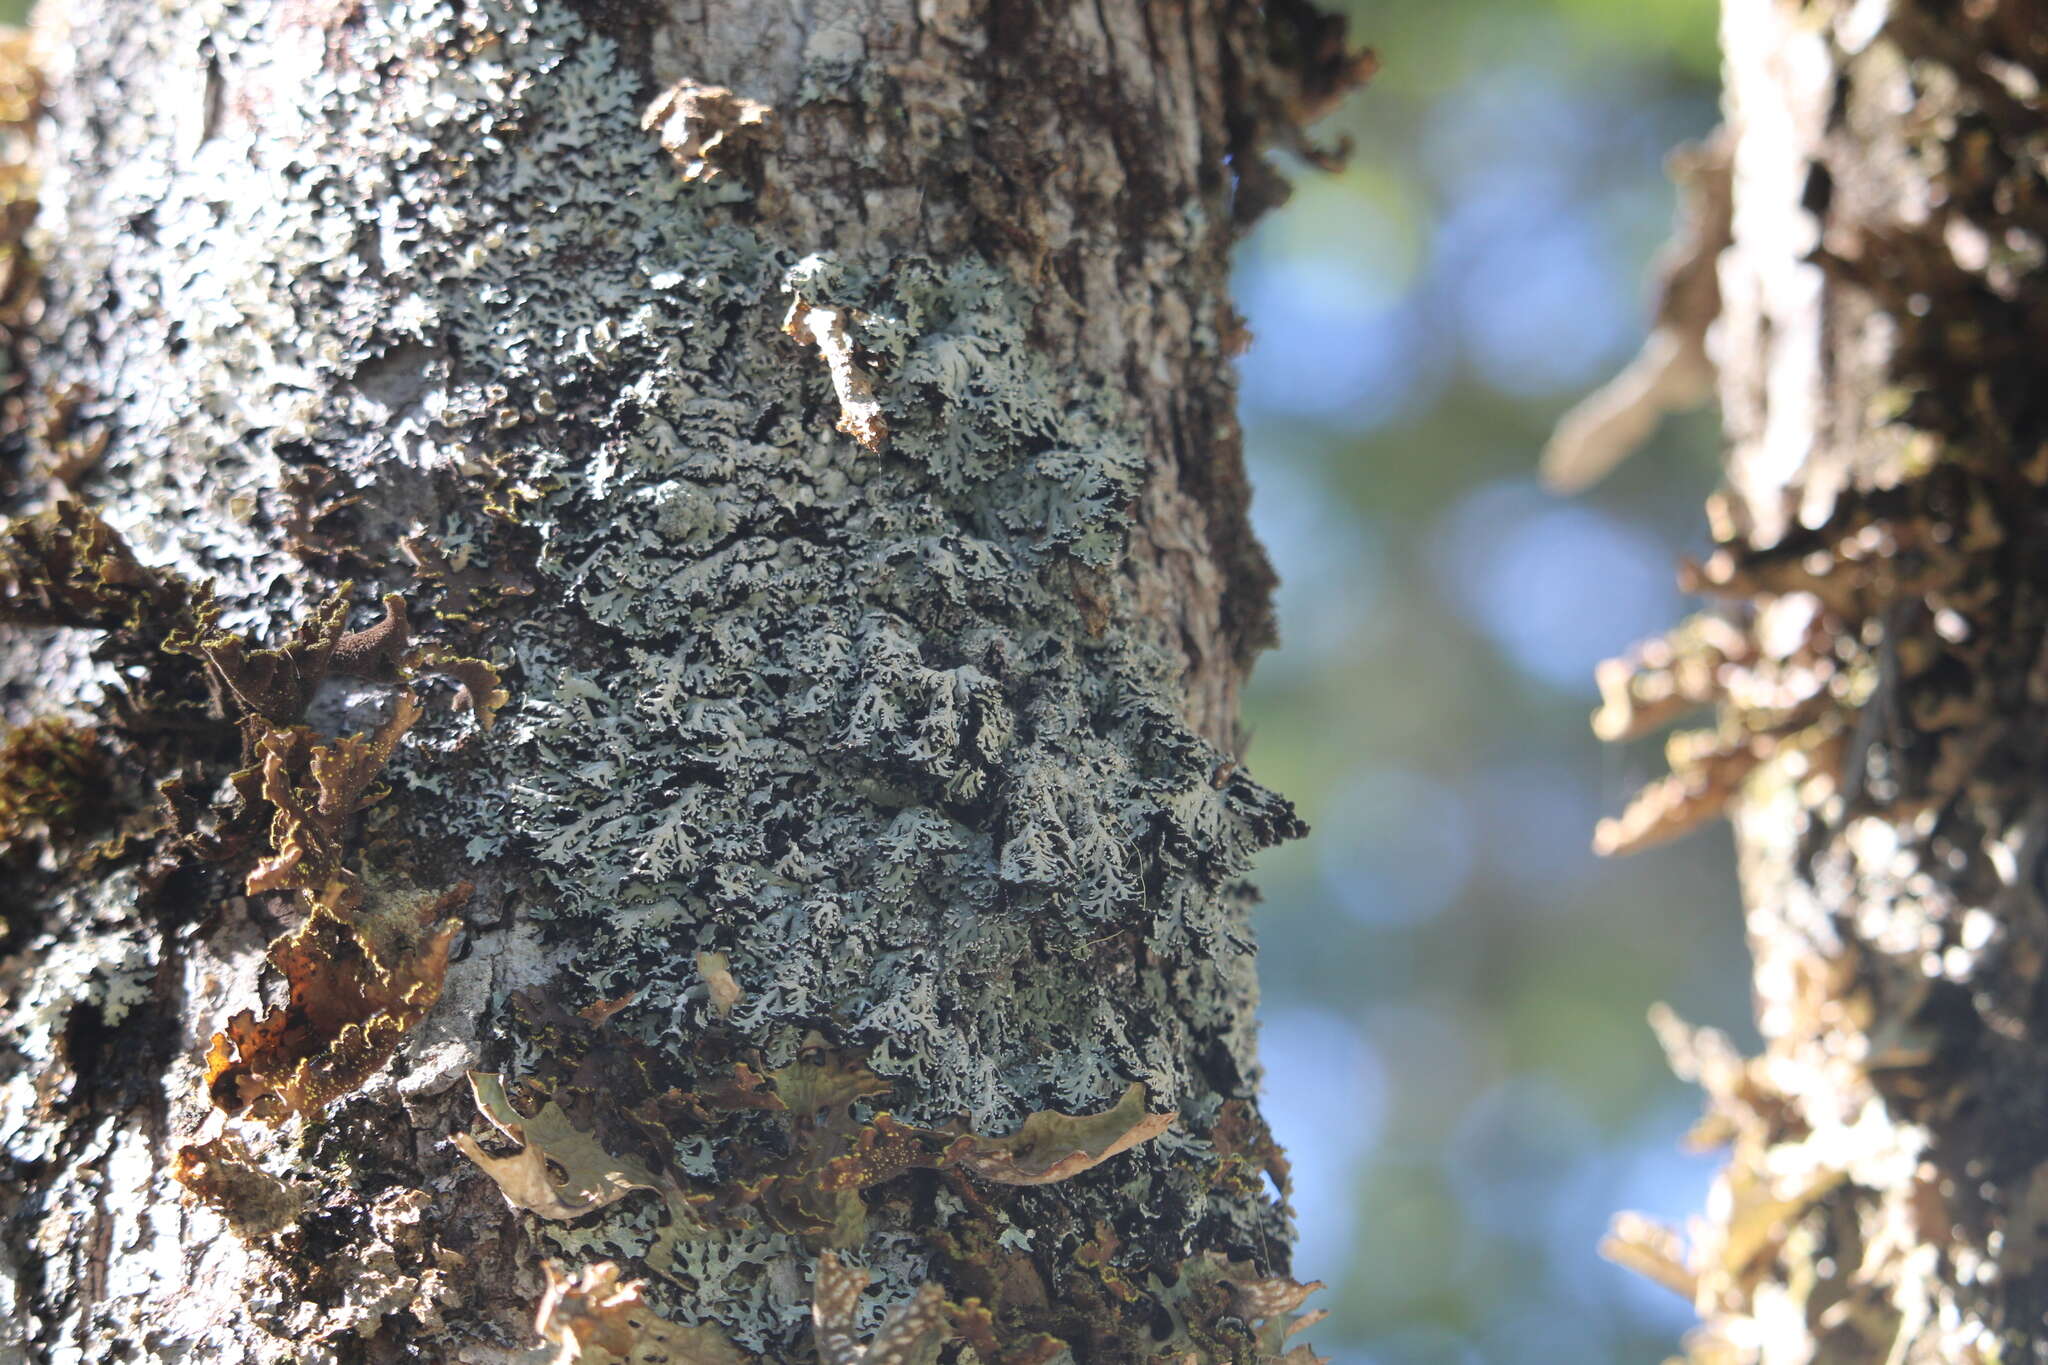 Image of anzia lichen